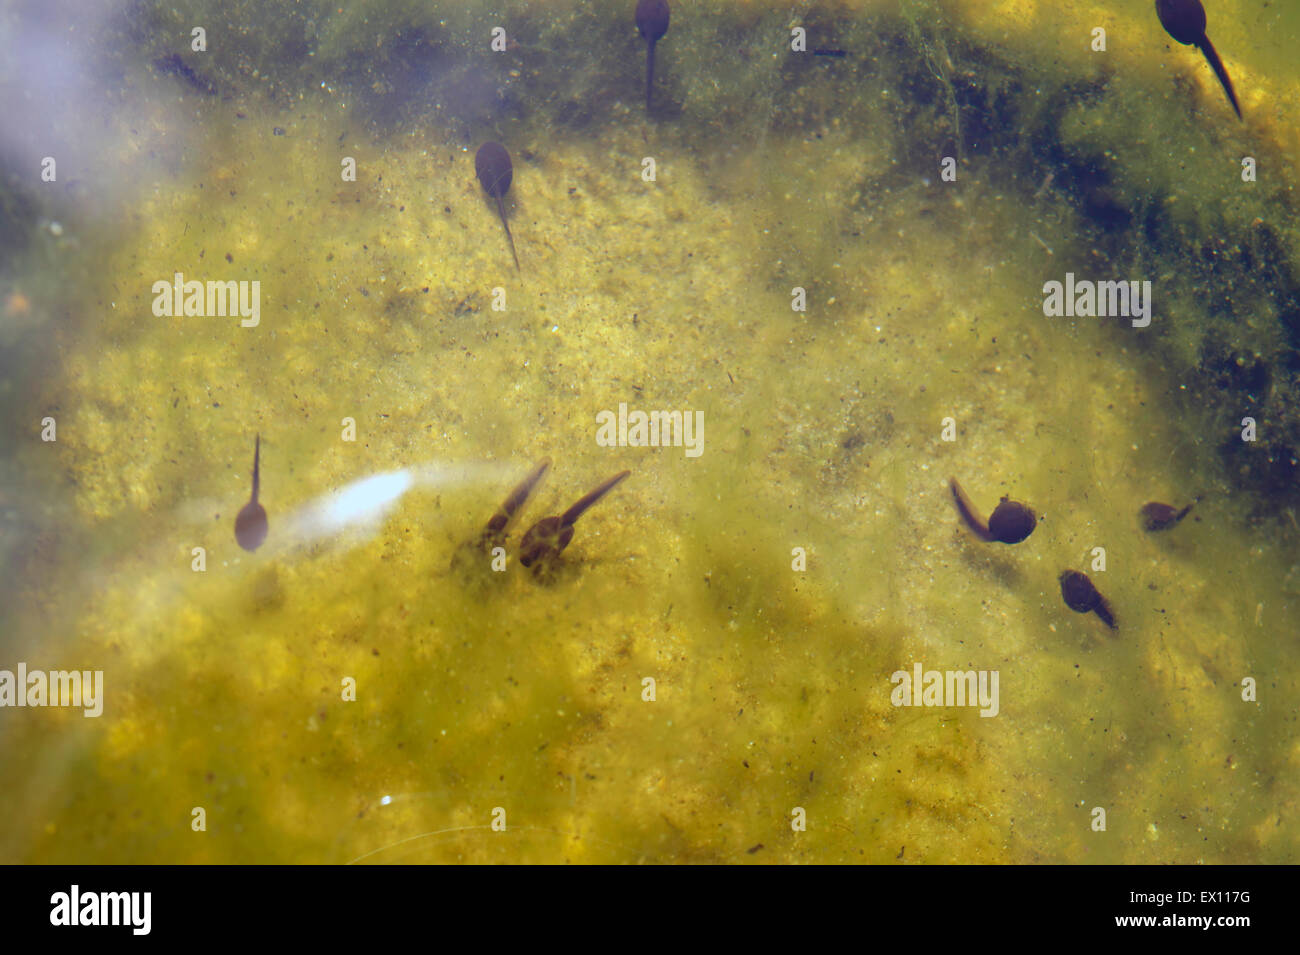 Tadpoles underwater Stock Photo